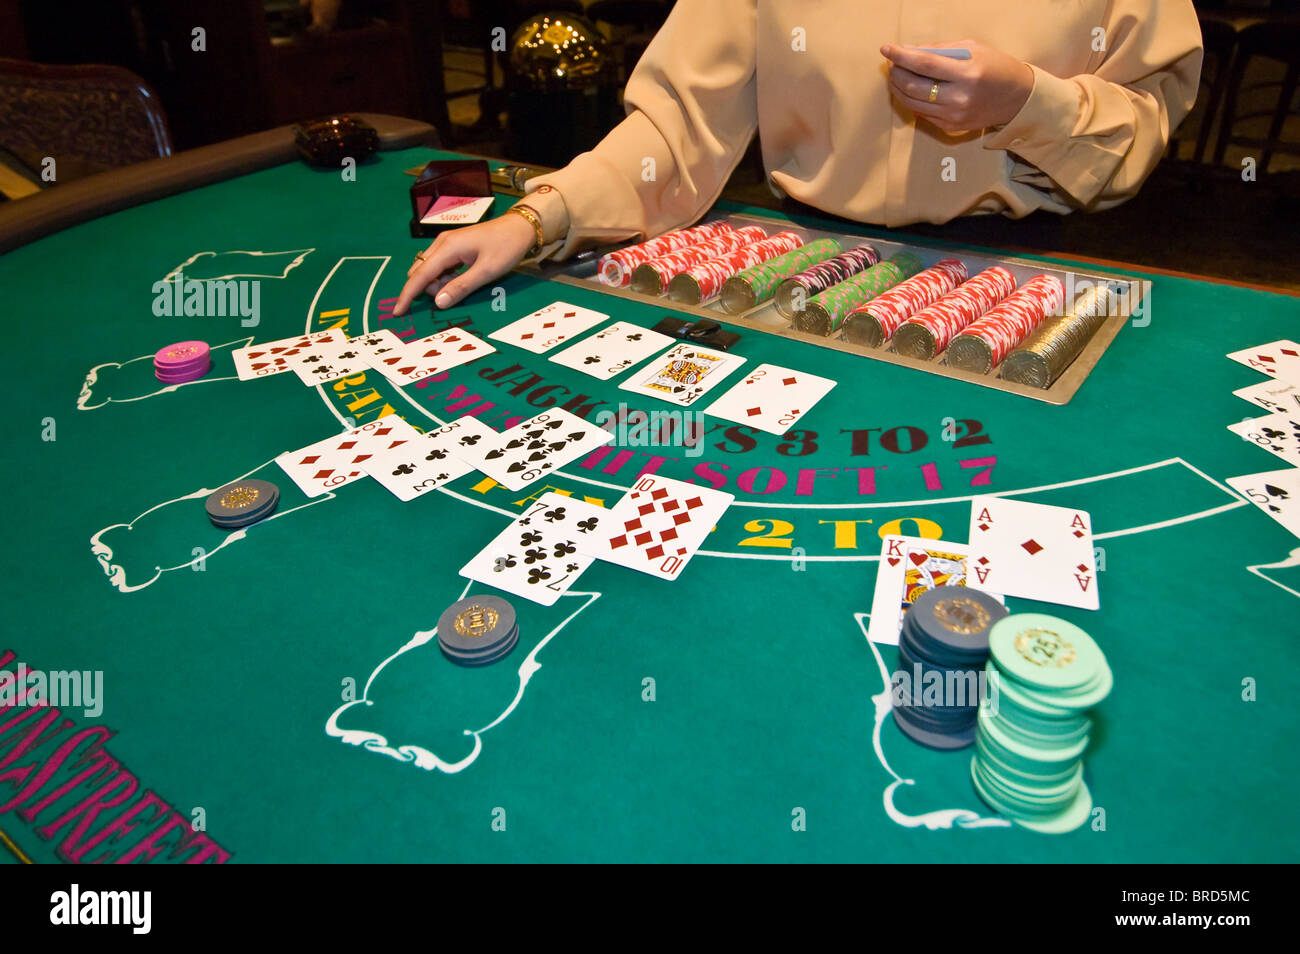 Best Blackjack Tables In Vegas